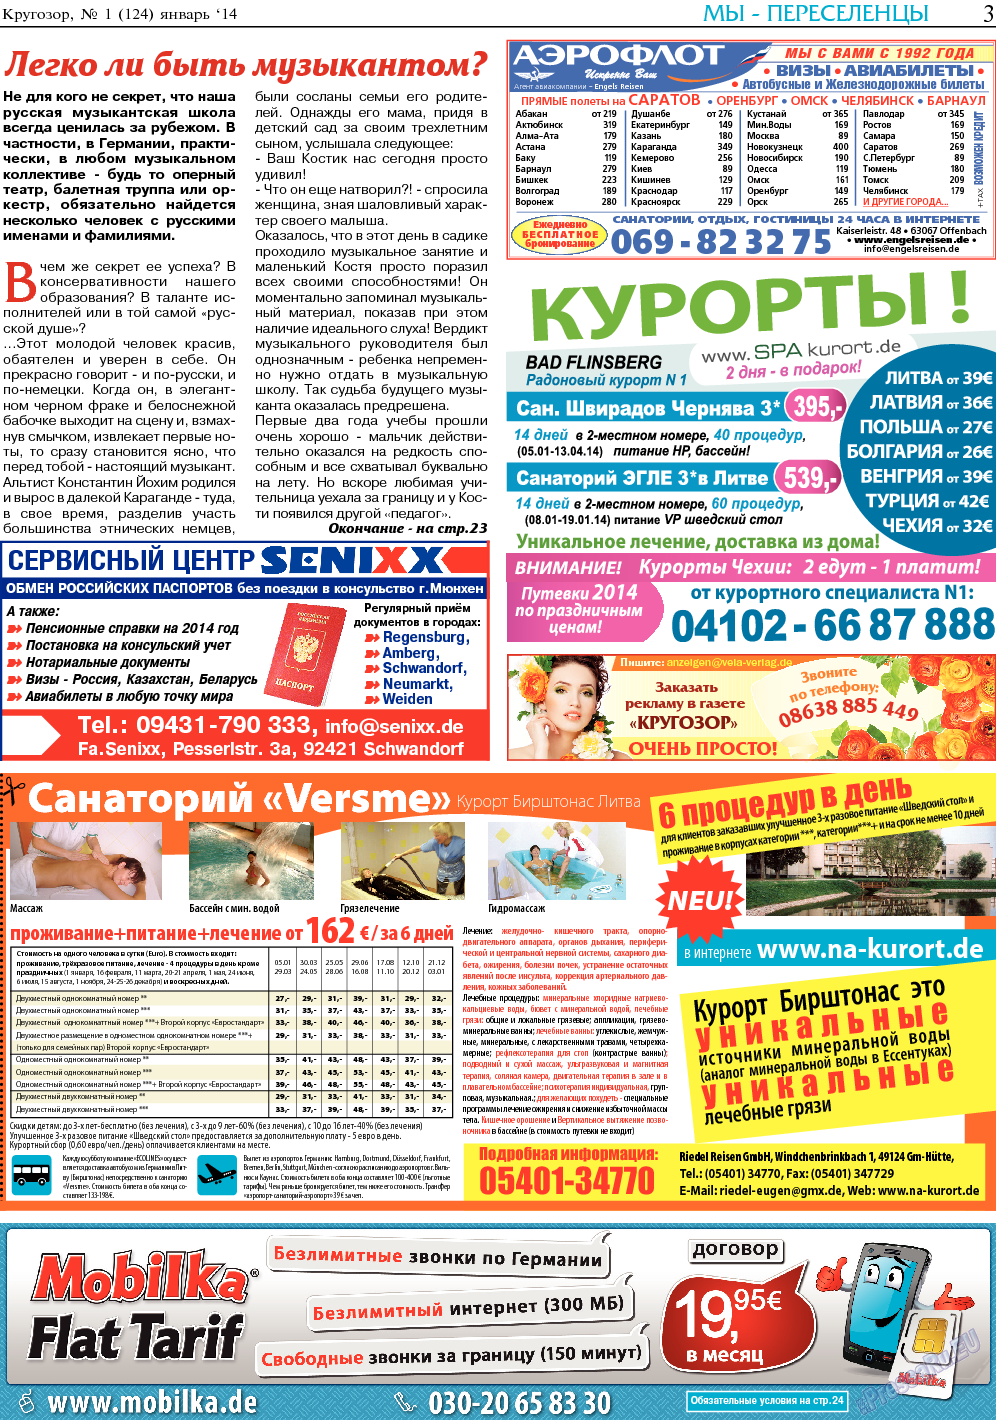 Кругозор, газета. 2014 №1 стр.3